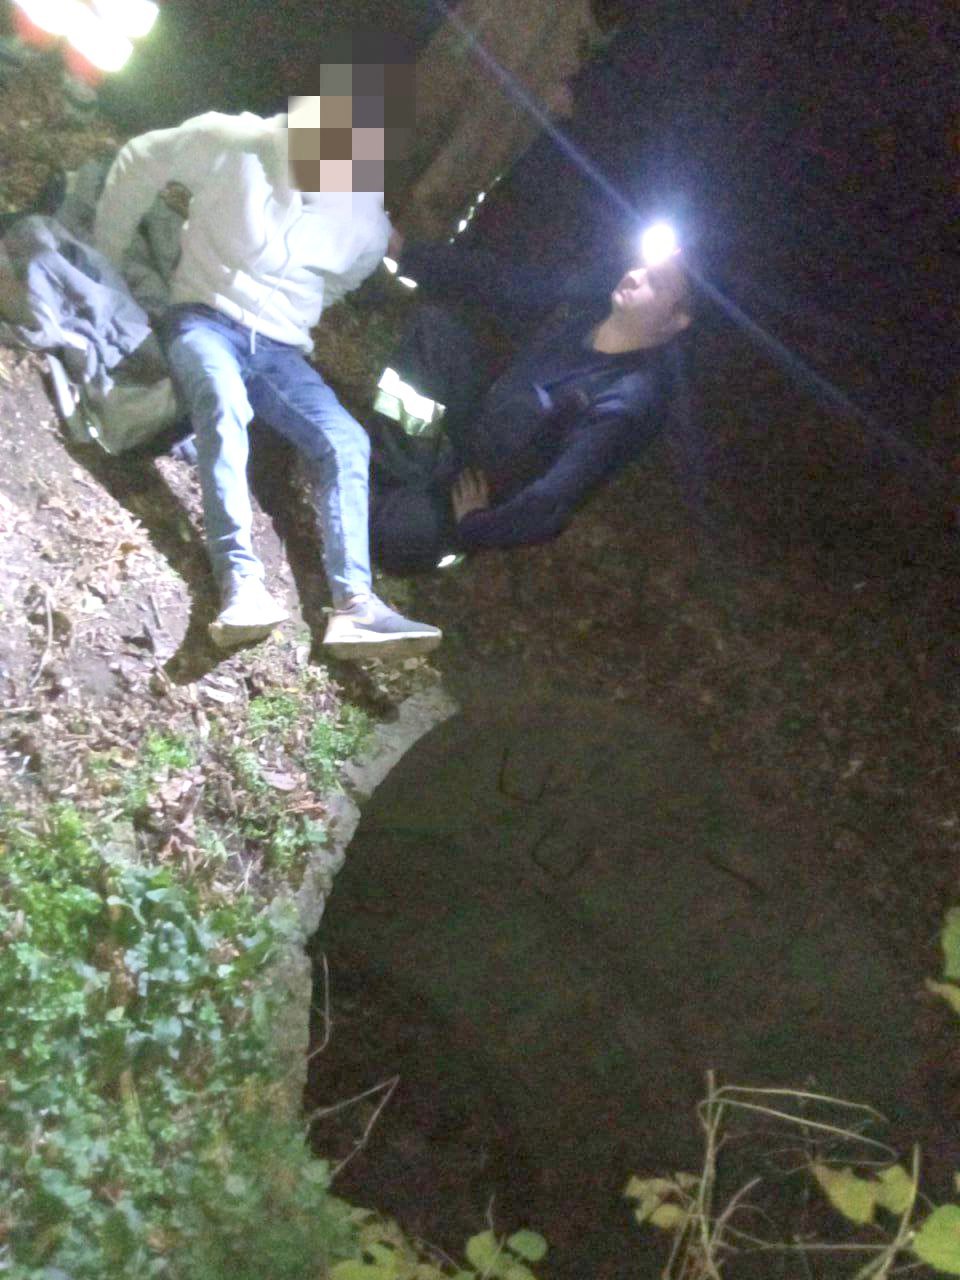 FOTO Soroca: Tânăr salvat după ce a căzut într-o gură de canalizare cu adâncimea de 2 metri